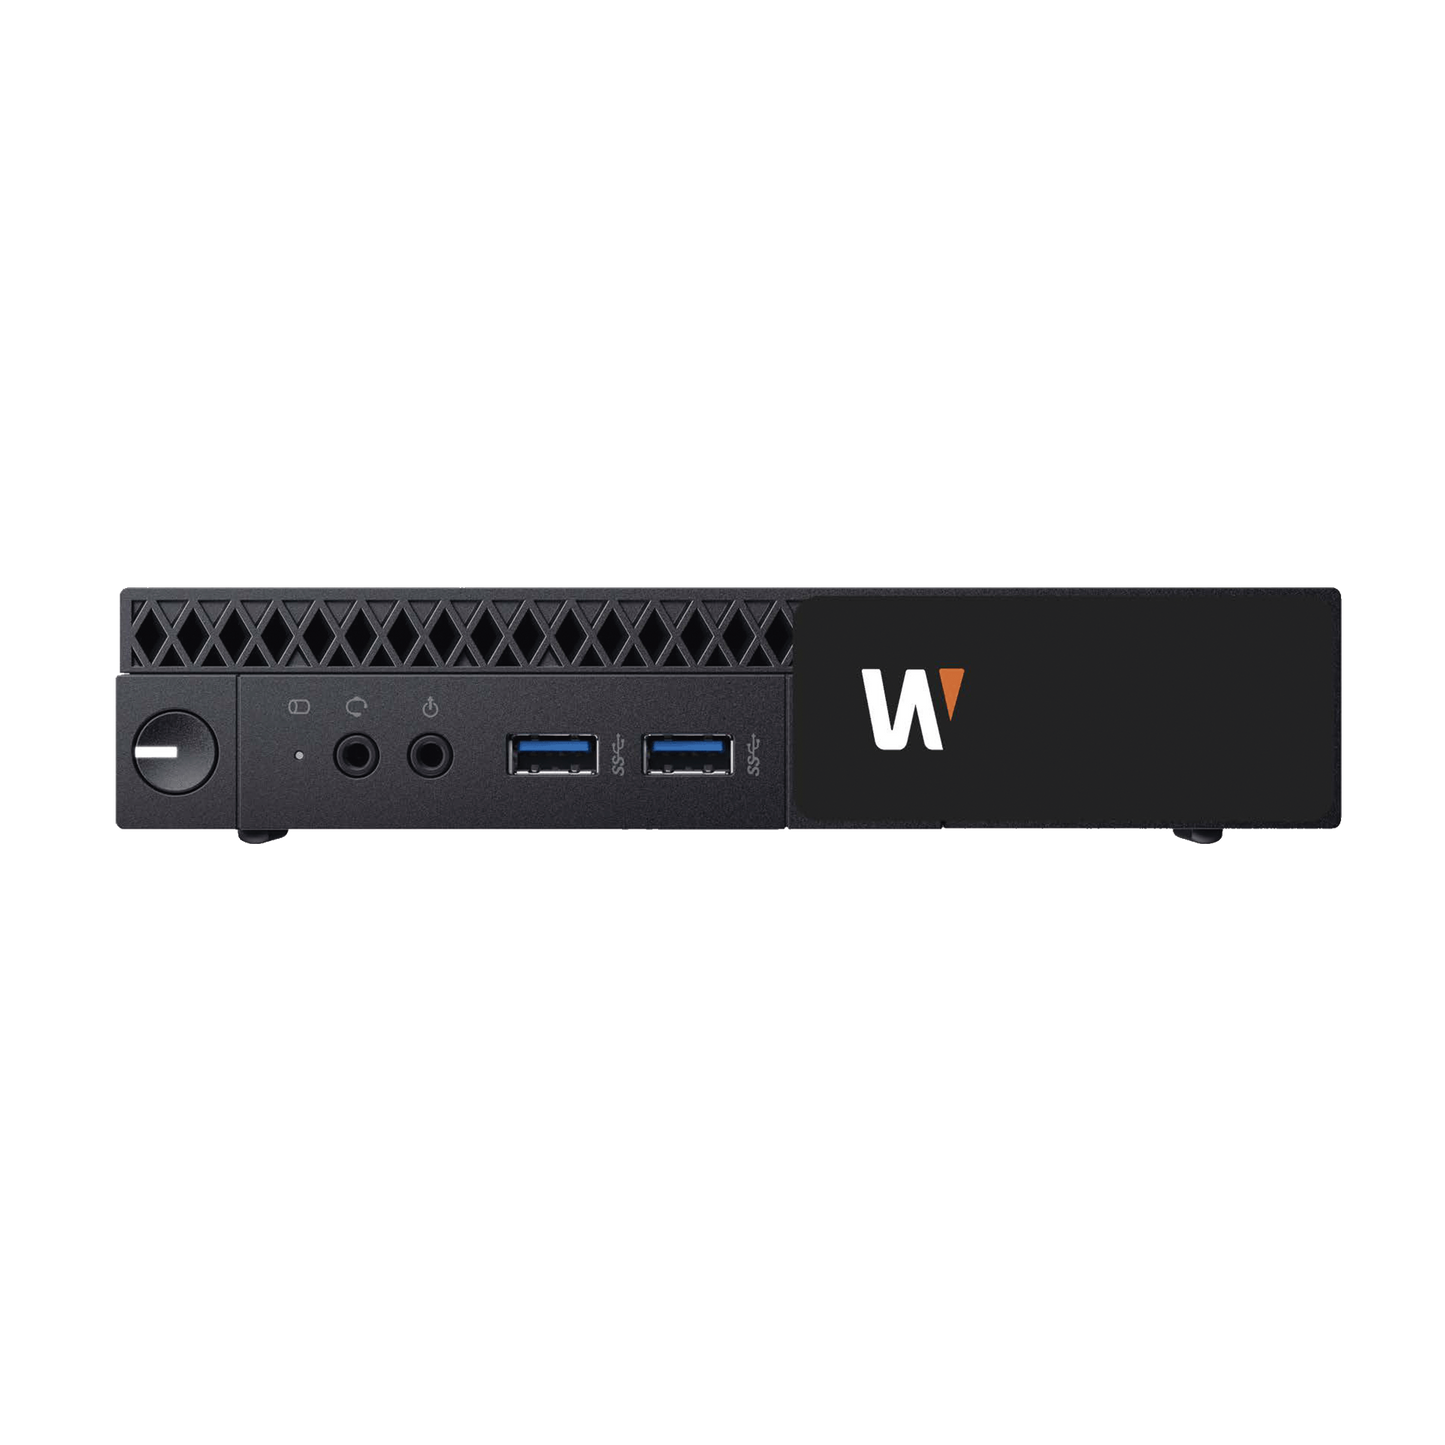 Estacion de trabajo o grabacion Wisenet WAVE basada en Windows / Incluye licencia WAVE-PRO-04 / 45 Mbps throughput / Incluye 2TB para almacenamiento